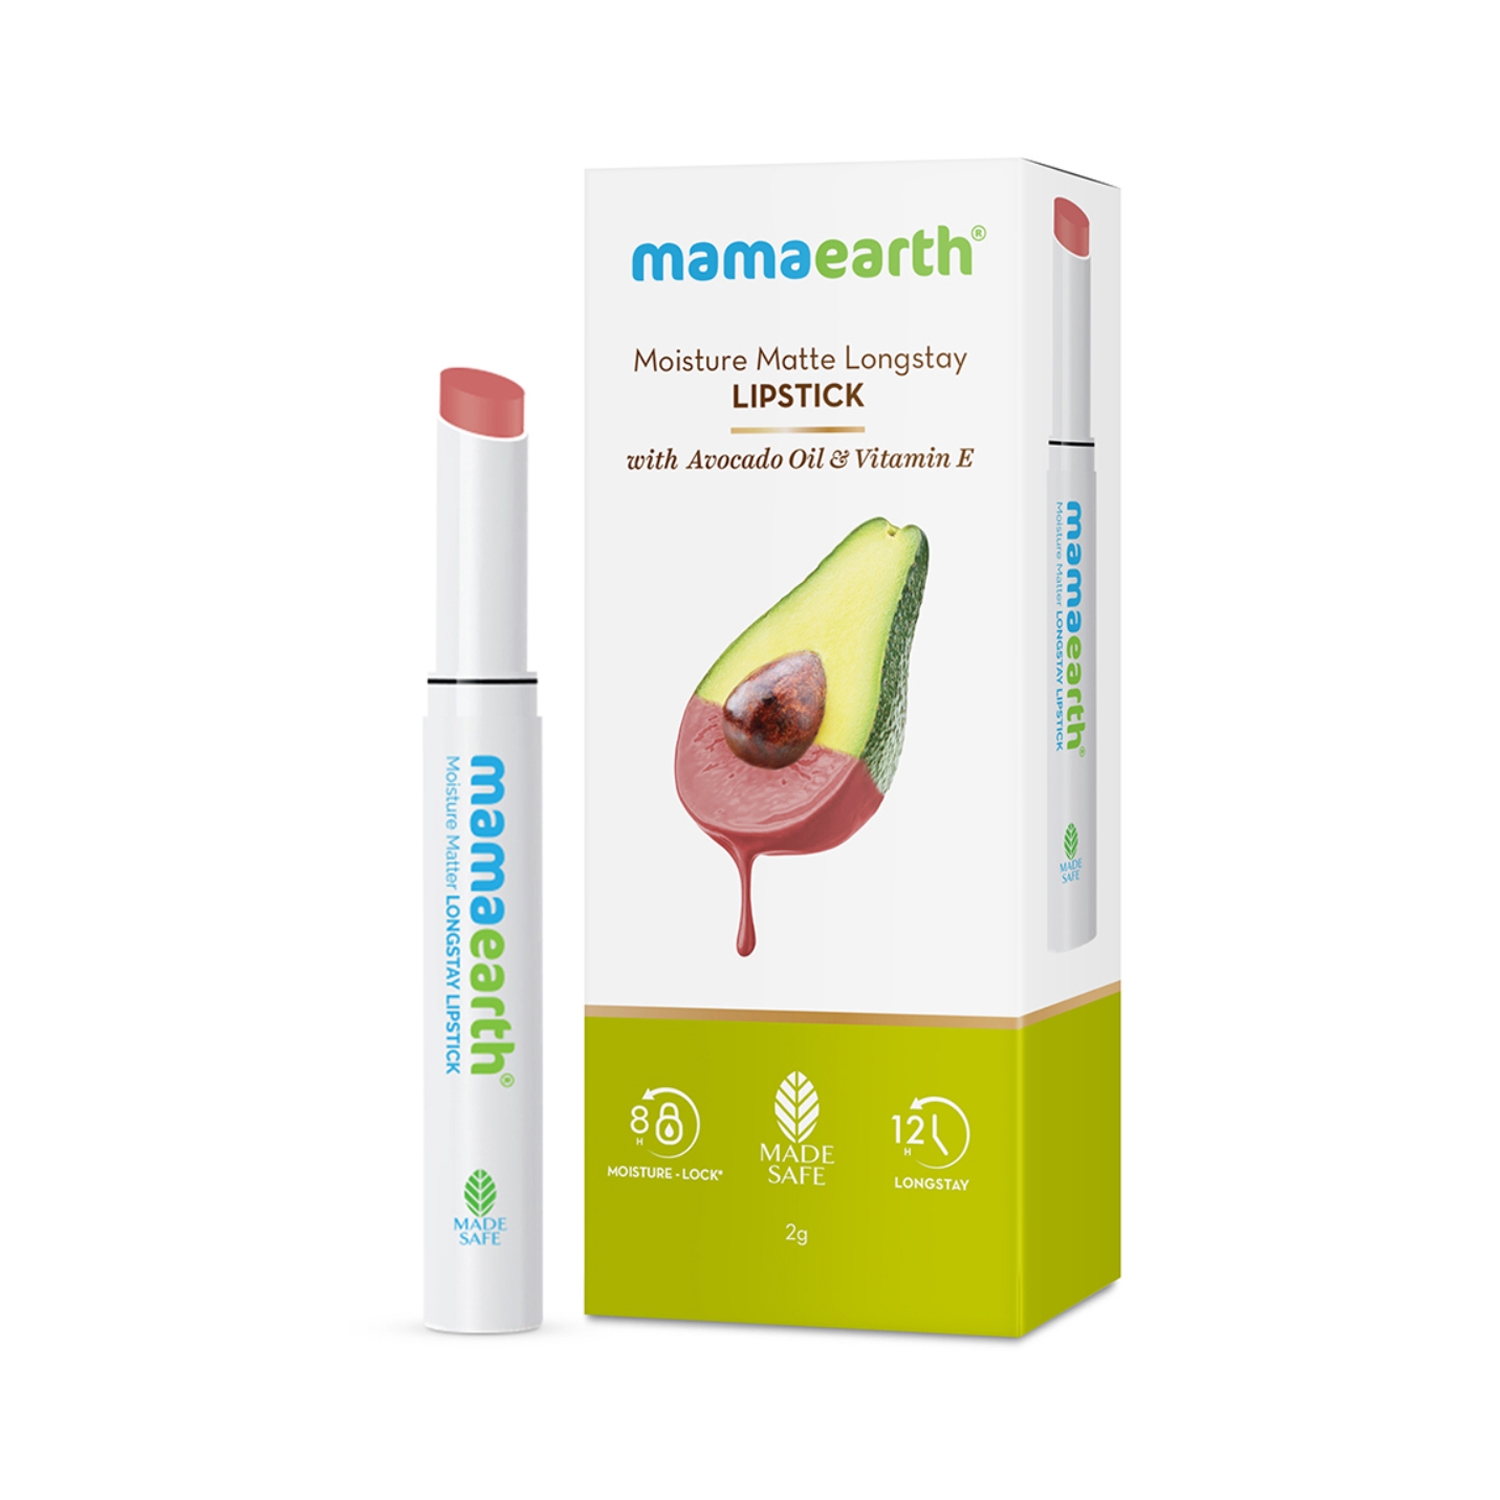 Mamaearth Moisture Matte Longstay Lipstick With Avocado Oil & Vitamin E - 05 Bubblegum Nude (2g)